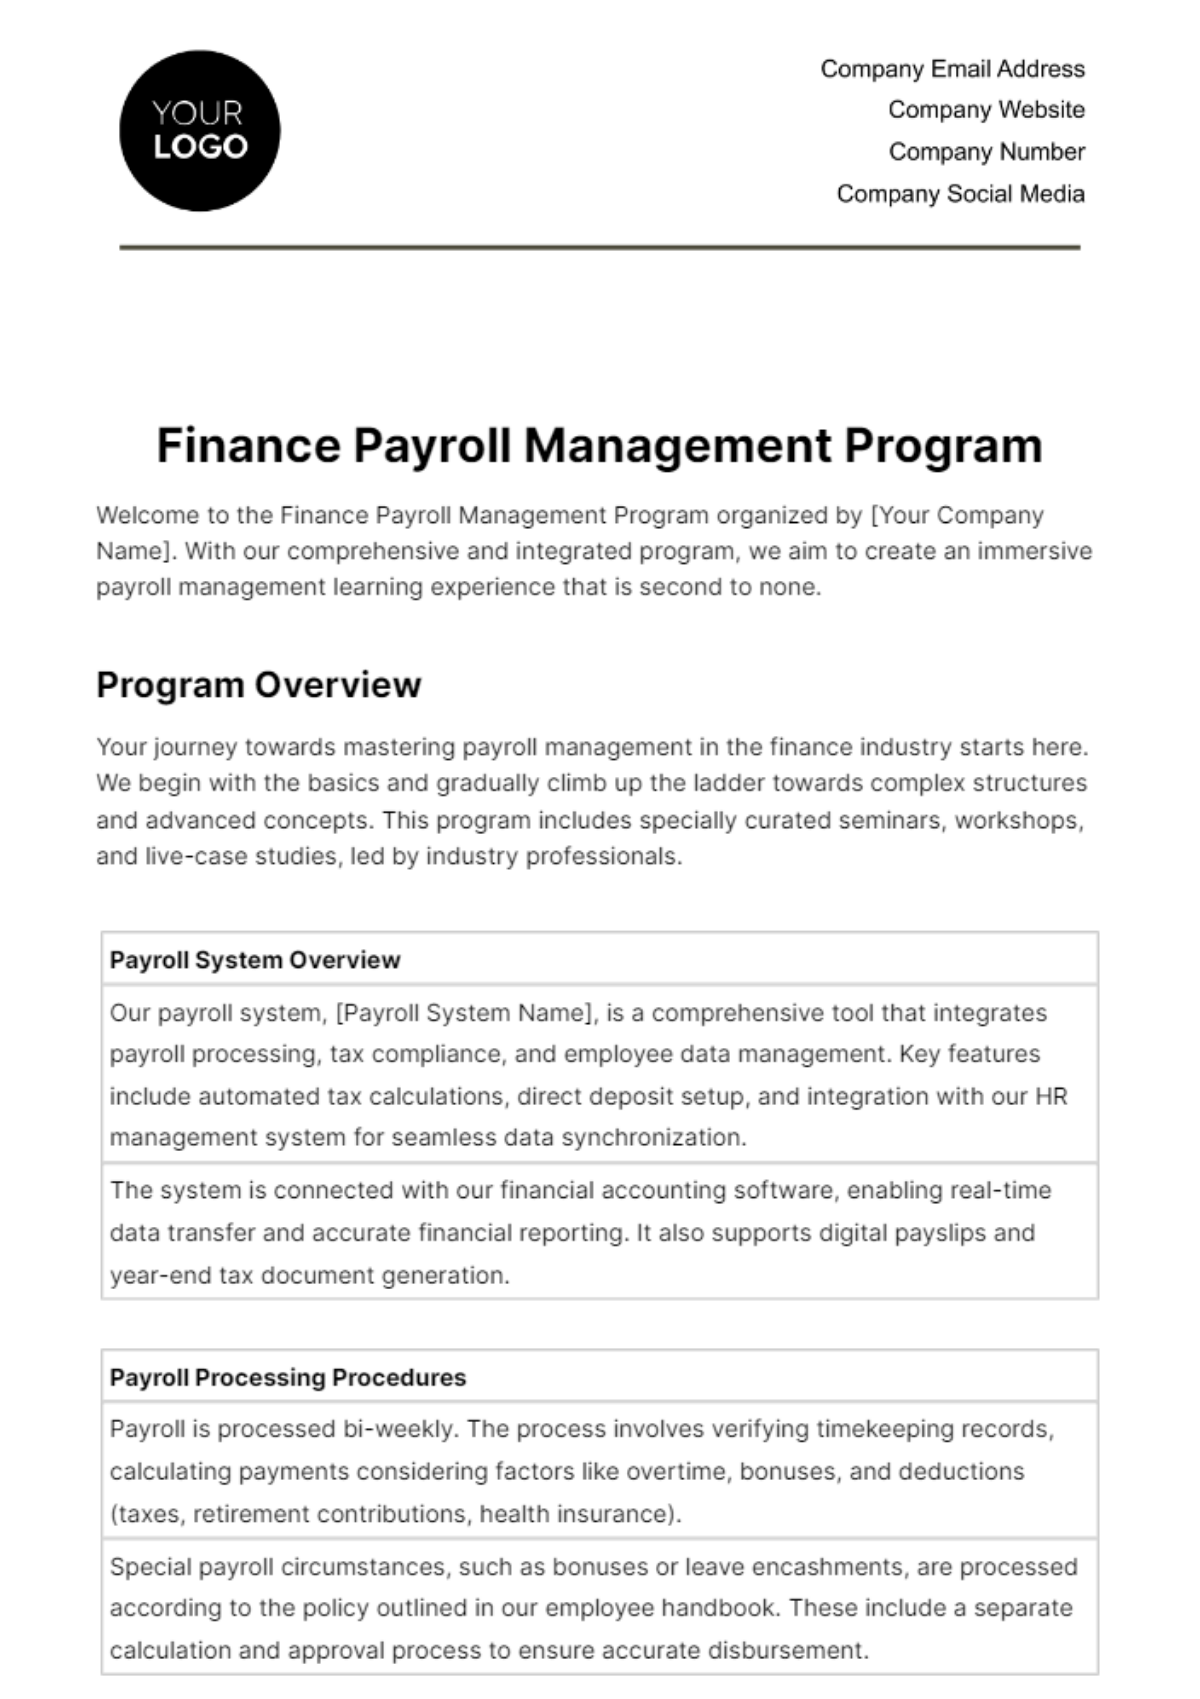 Free Finance Payroll Management Program Template